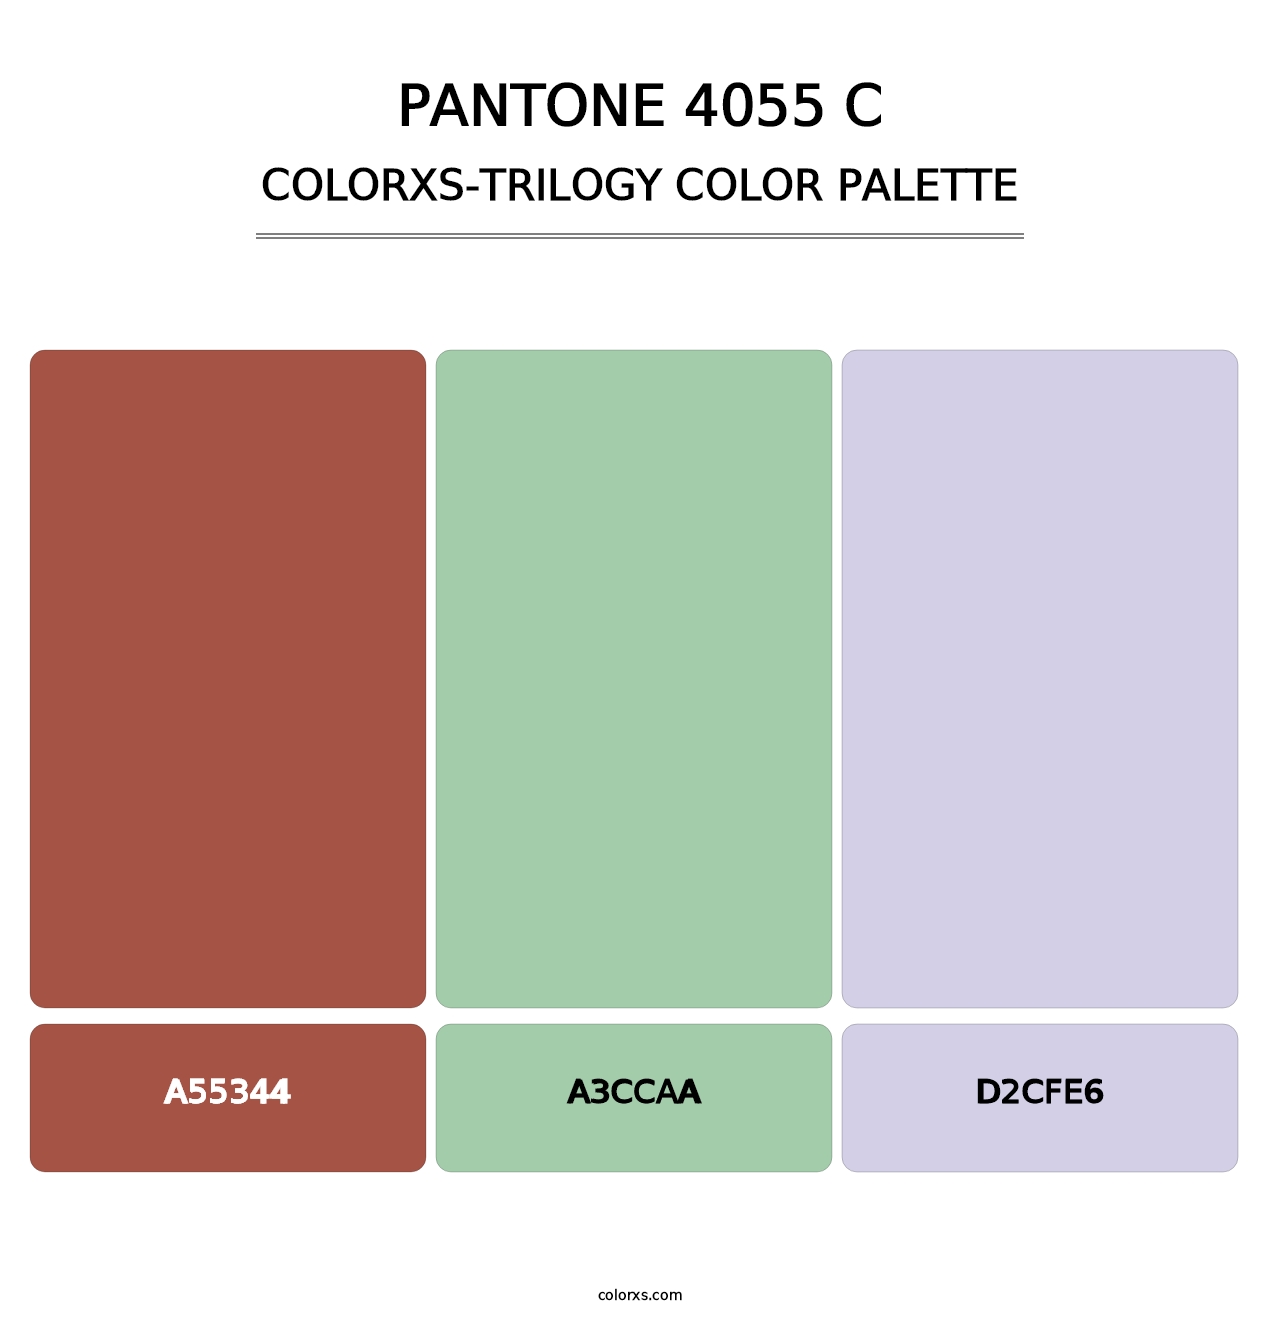 PANTONE 4055 C - Colorxs Trilogy Palette